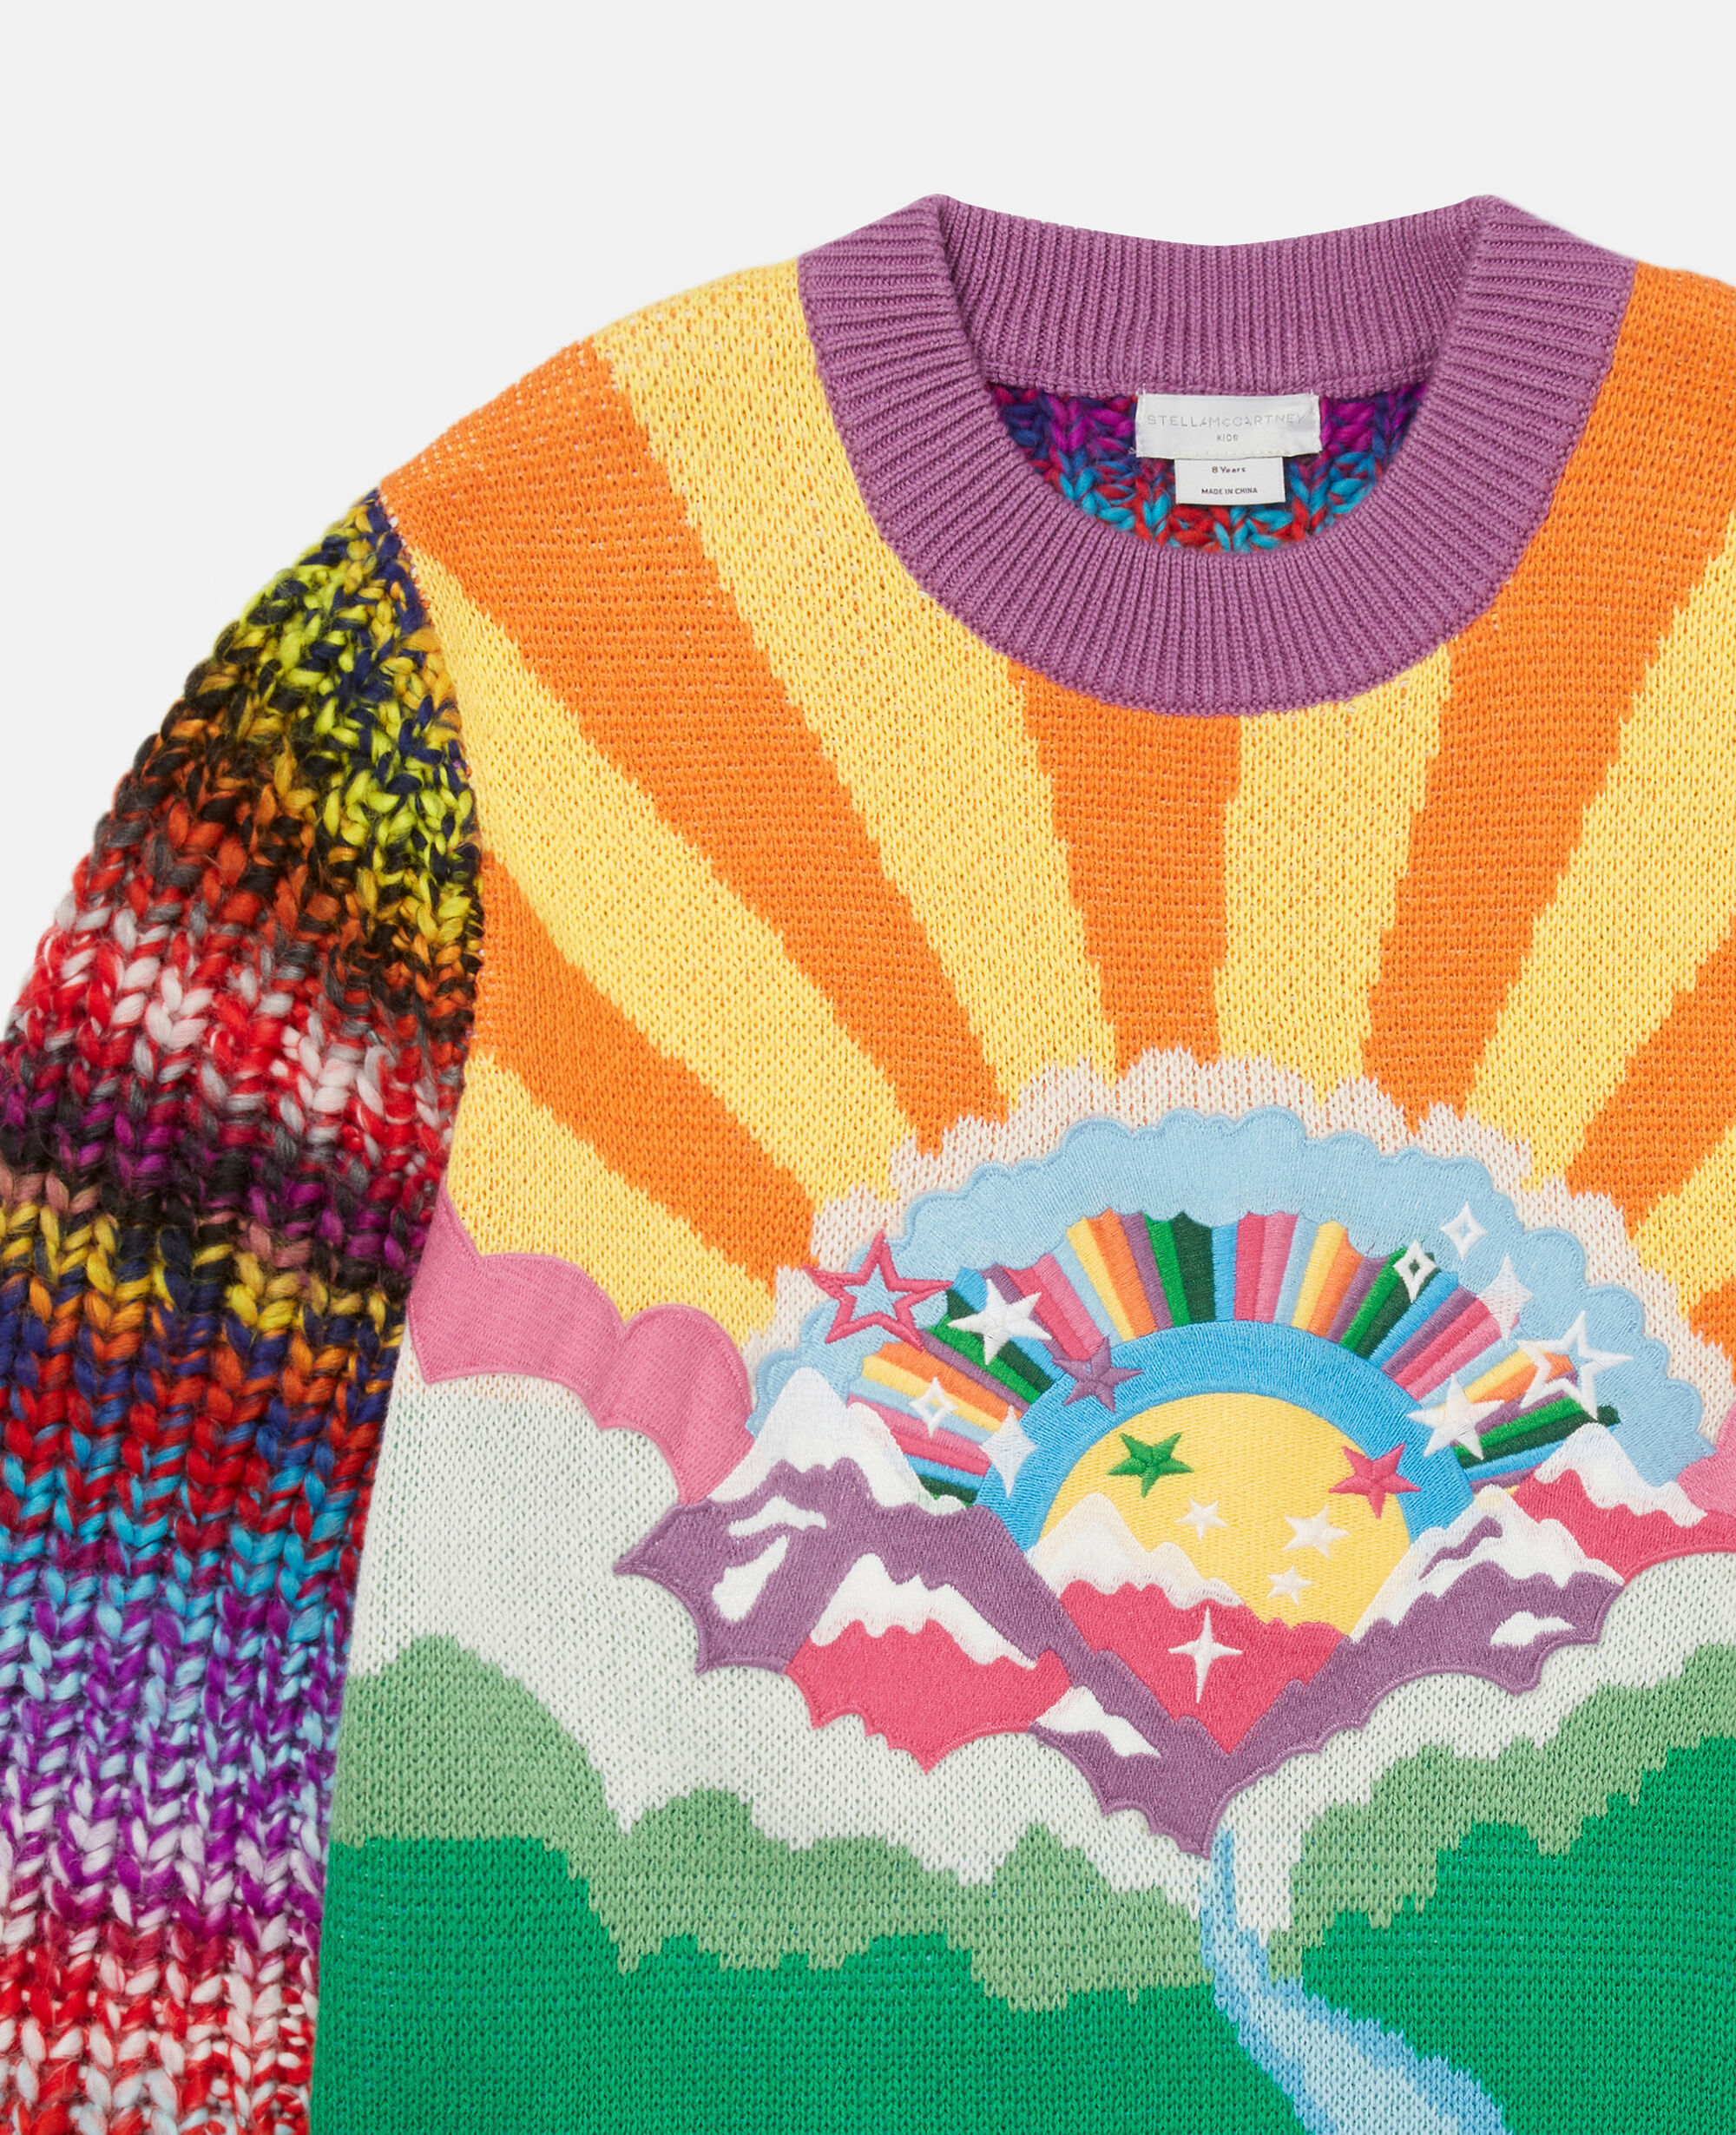 Sciarpa in maglia a righe arcobaleno Stella McCartney Bambina Accessori Sciarpe 